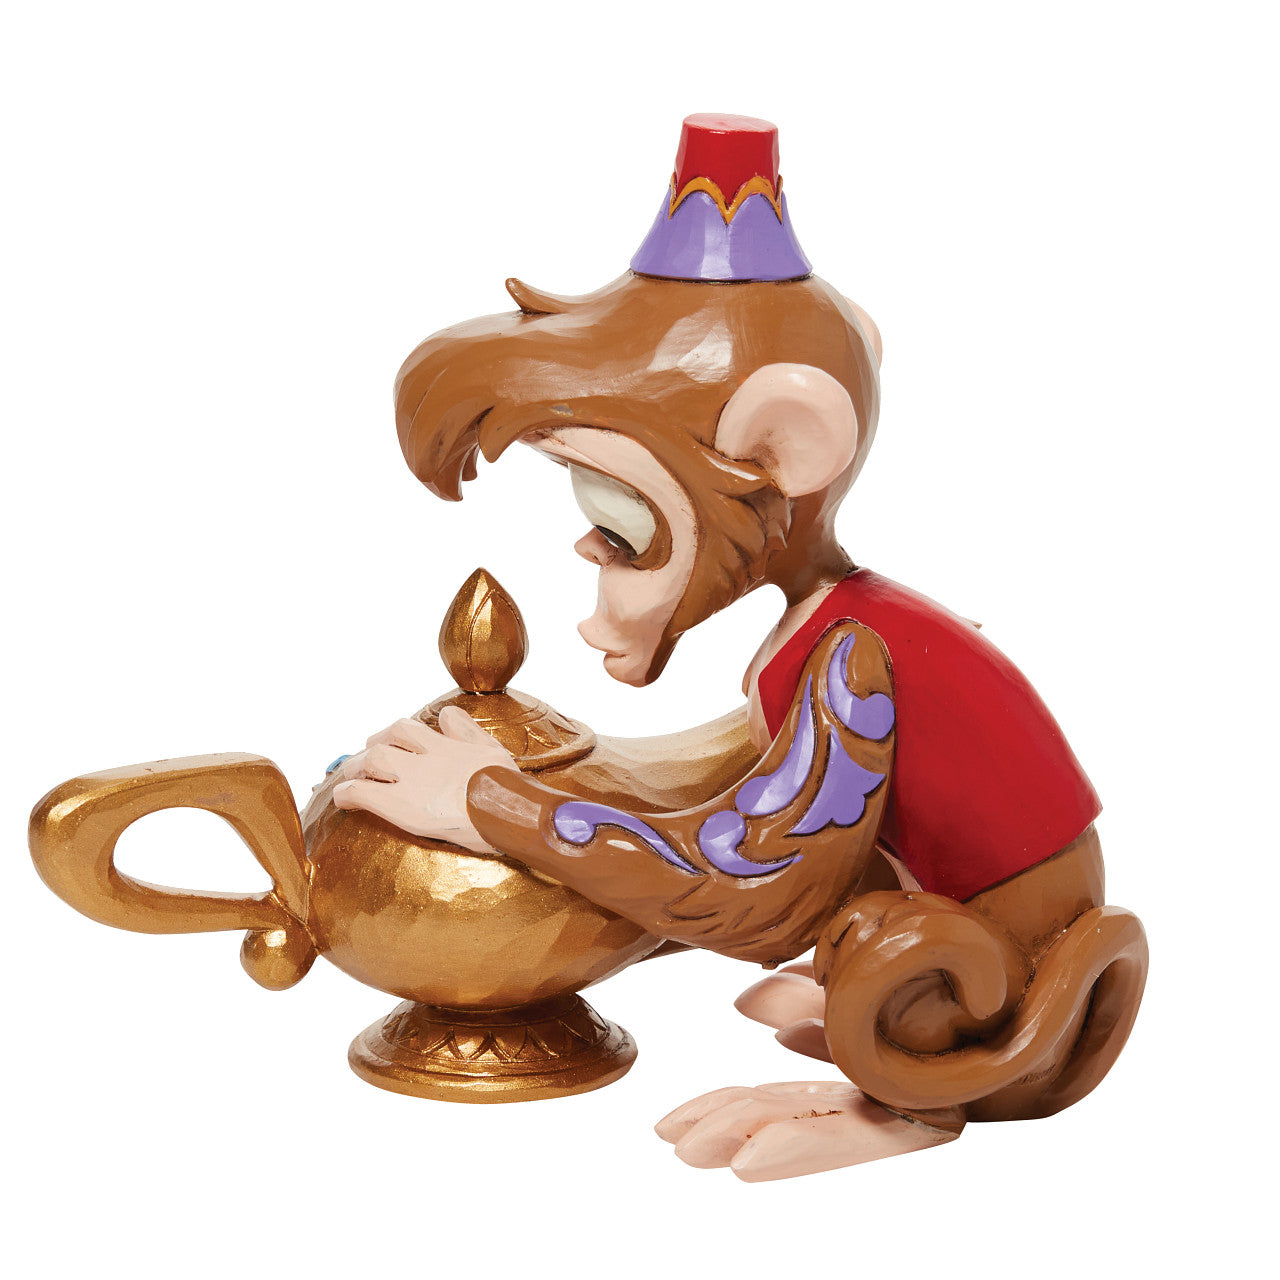 Monkey Business - Abu with Genie Lamp